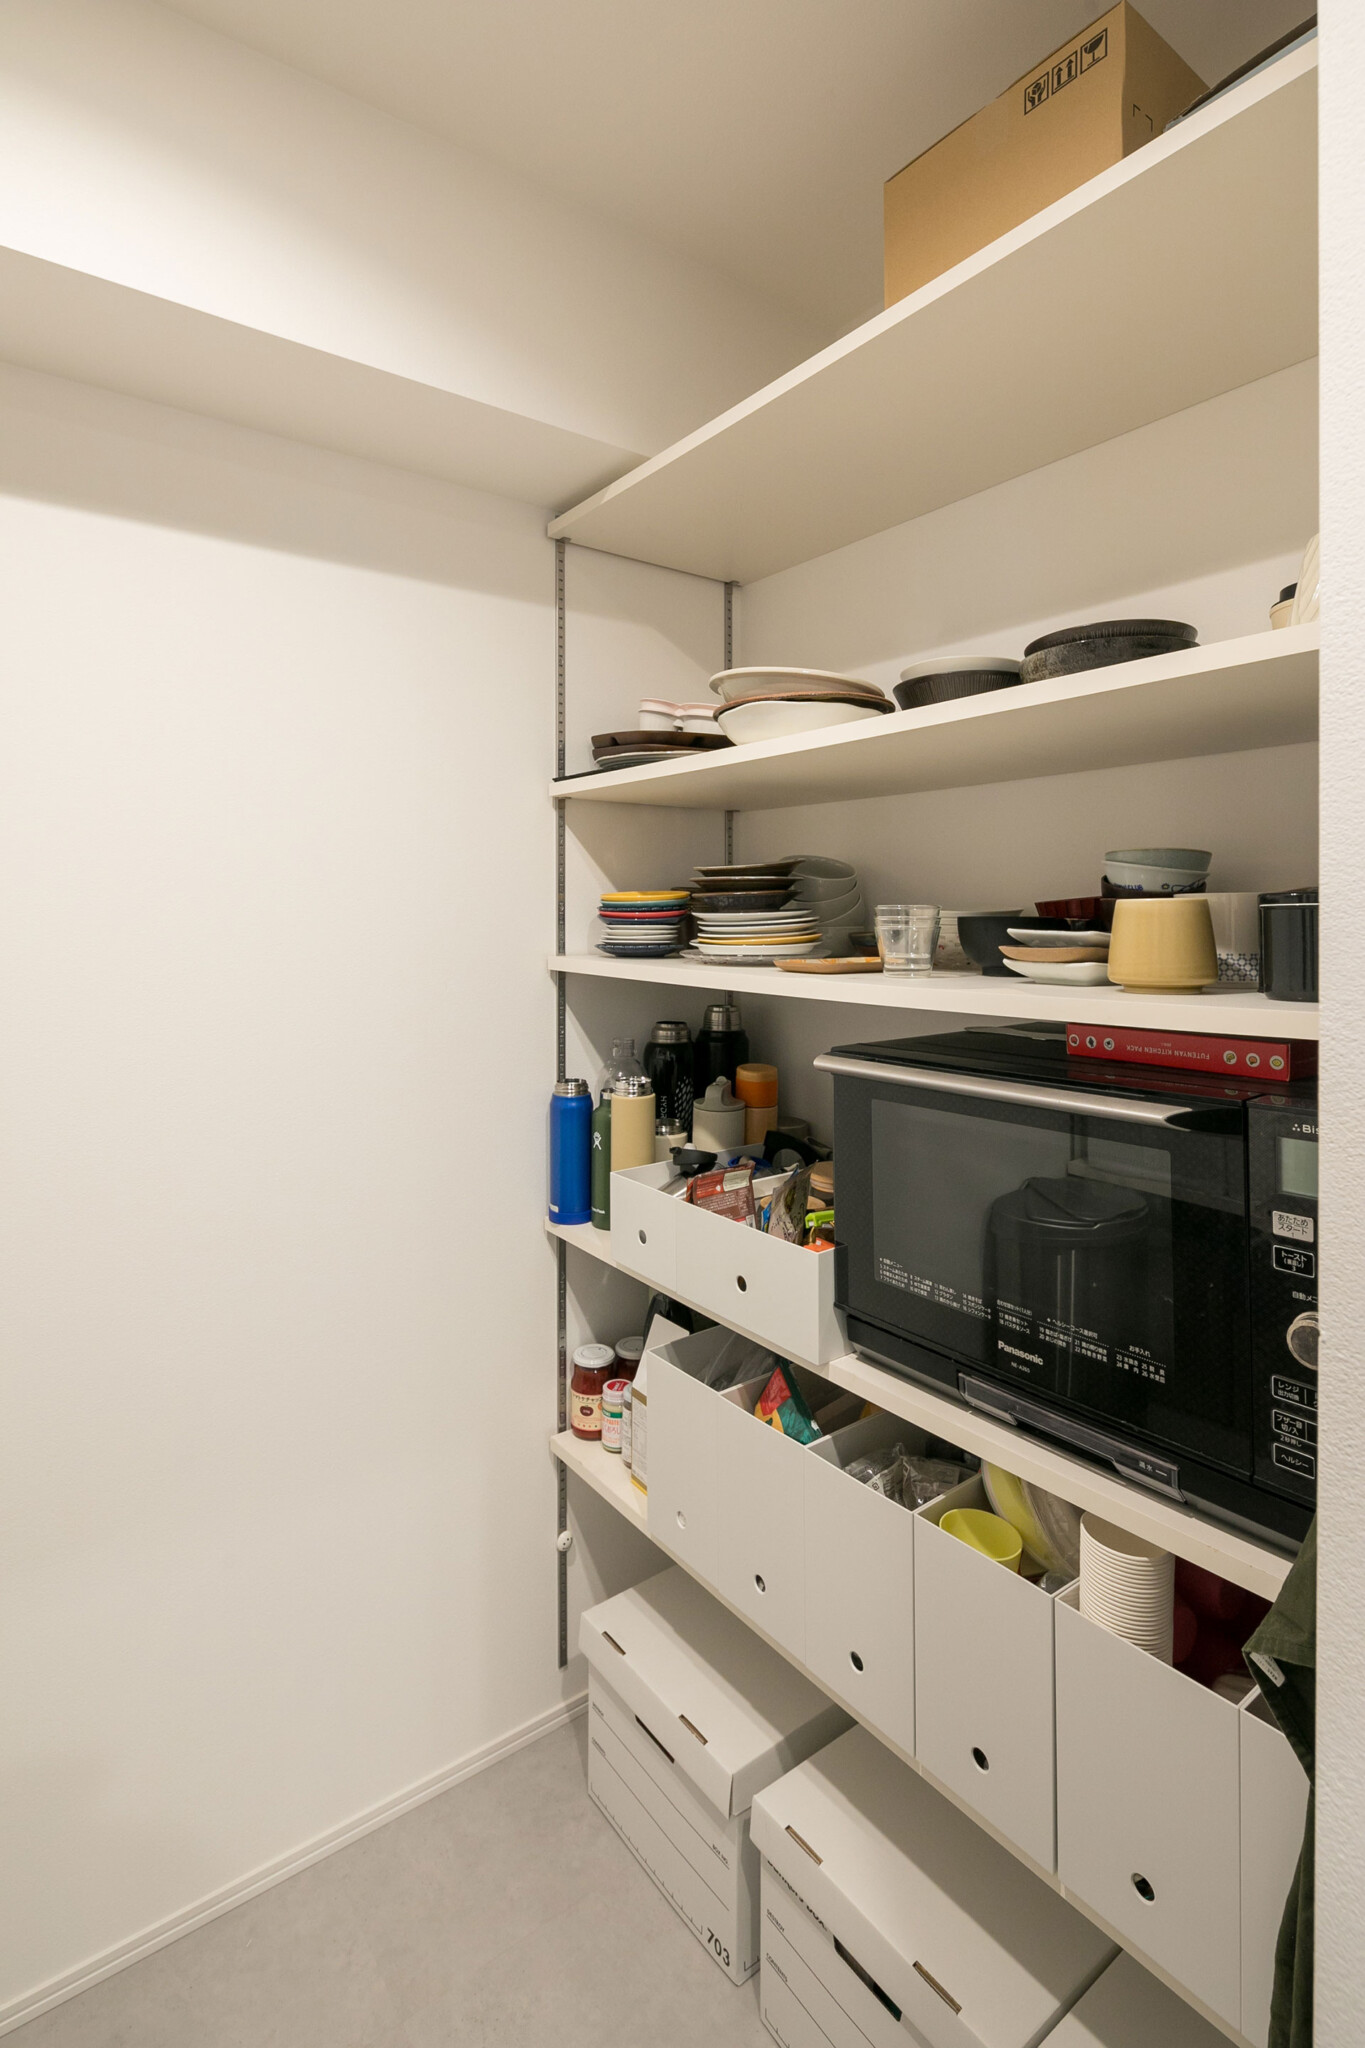 キッチンの奥には大容量のパントリーを設けている。「パントリー・キッチン・洗面所が一直線になるように計画をしたことで、家事動線がスムーズになりました」。